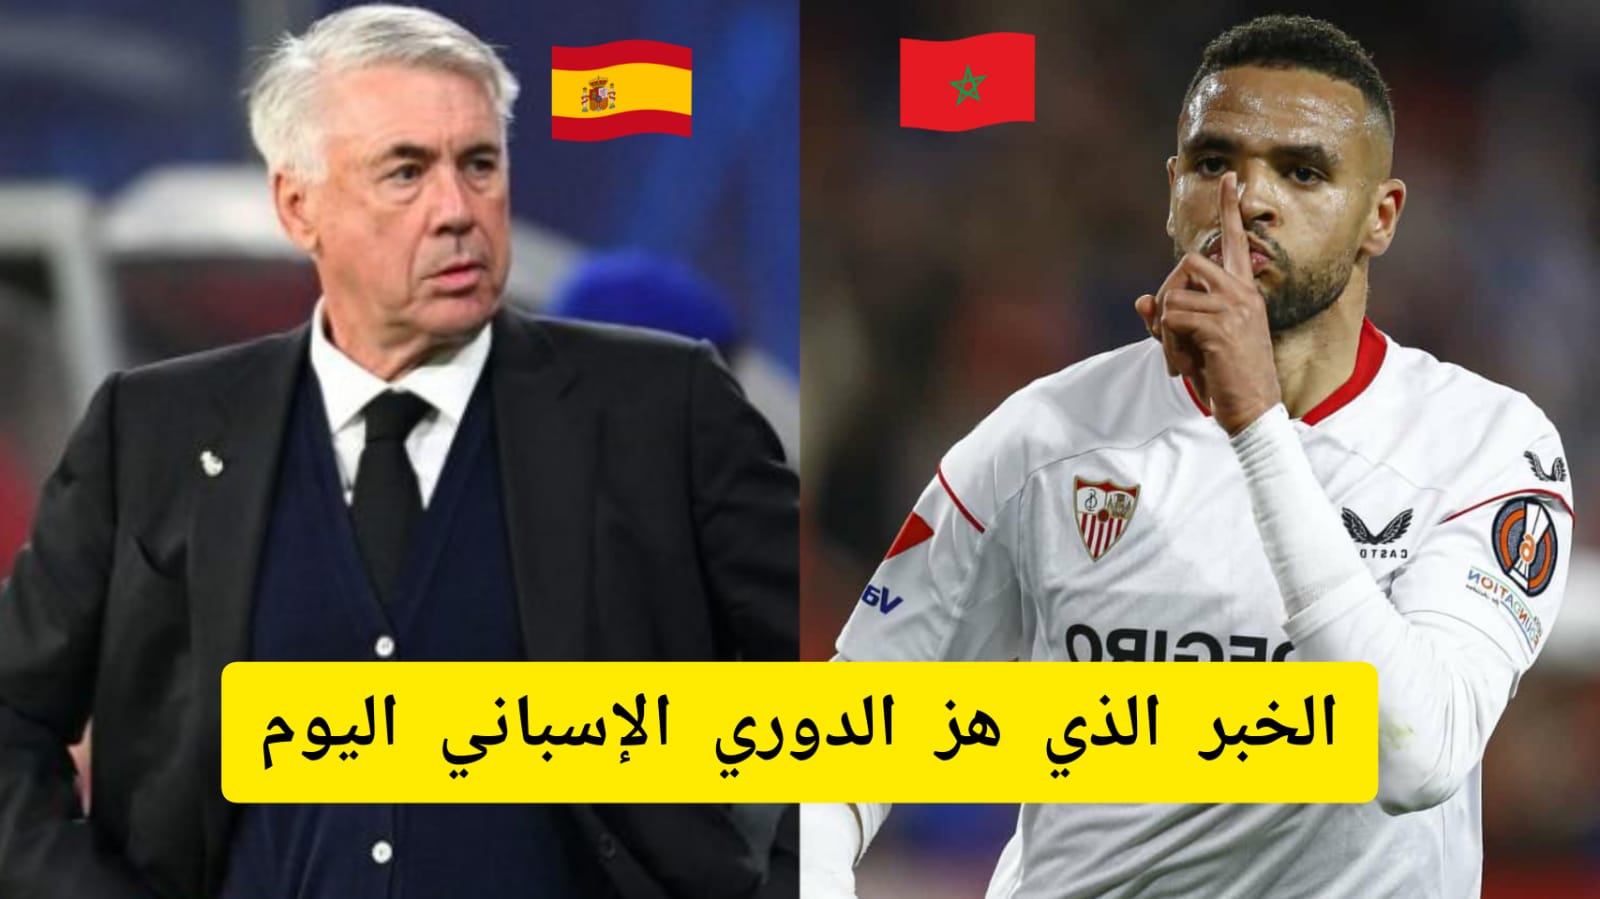 صفقة تاريخية لريال مدريد بطلها يوسف النصيري تهز إسبانيا والمغاربة